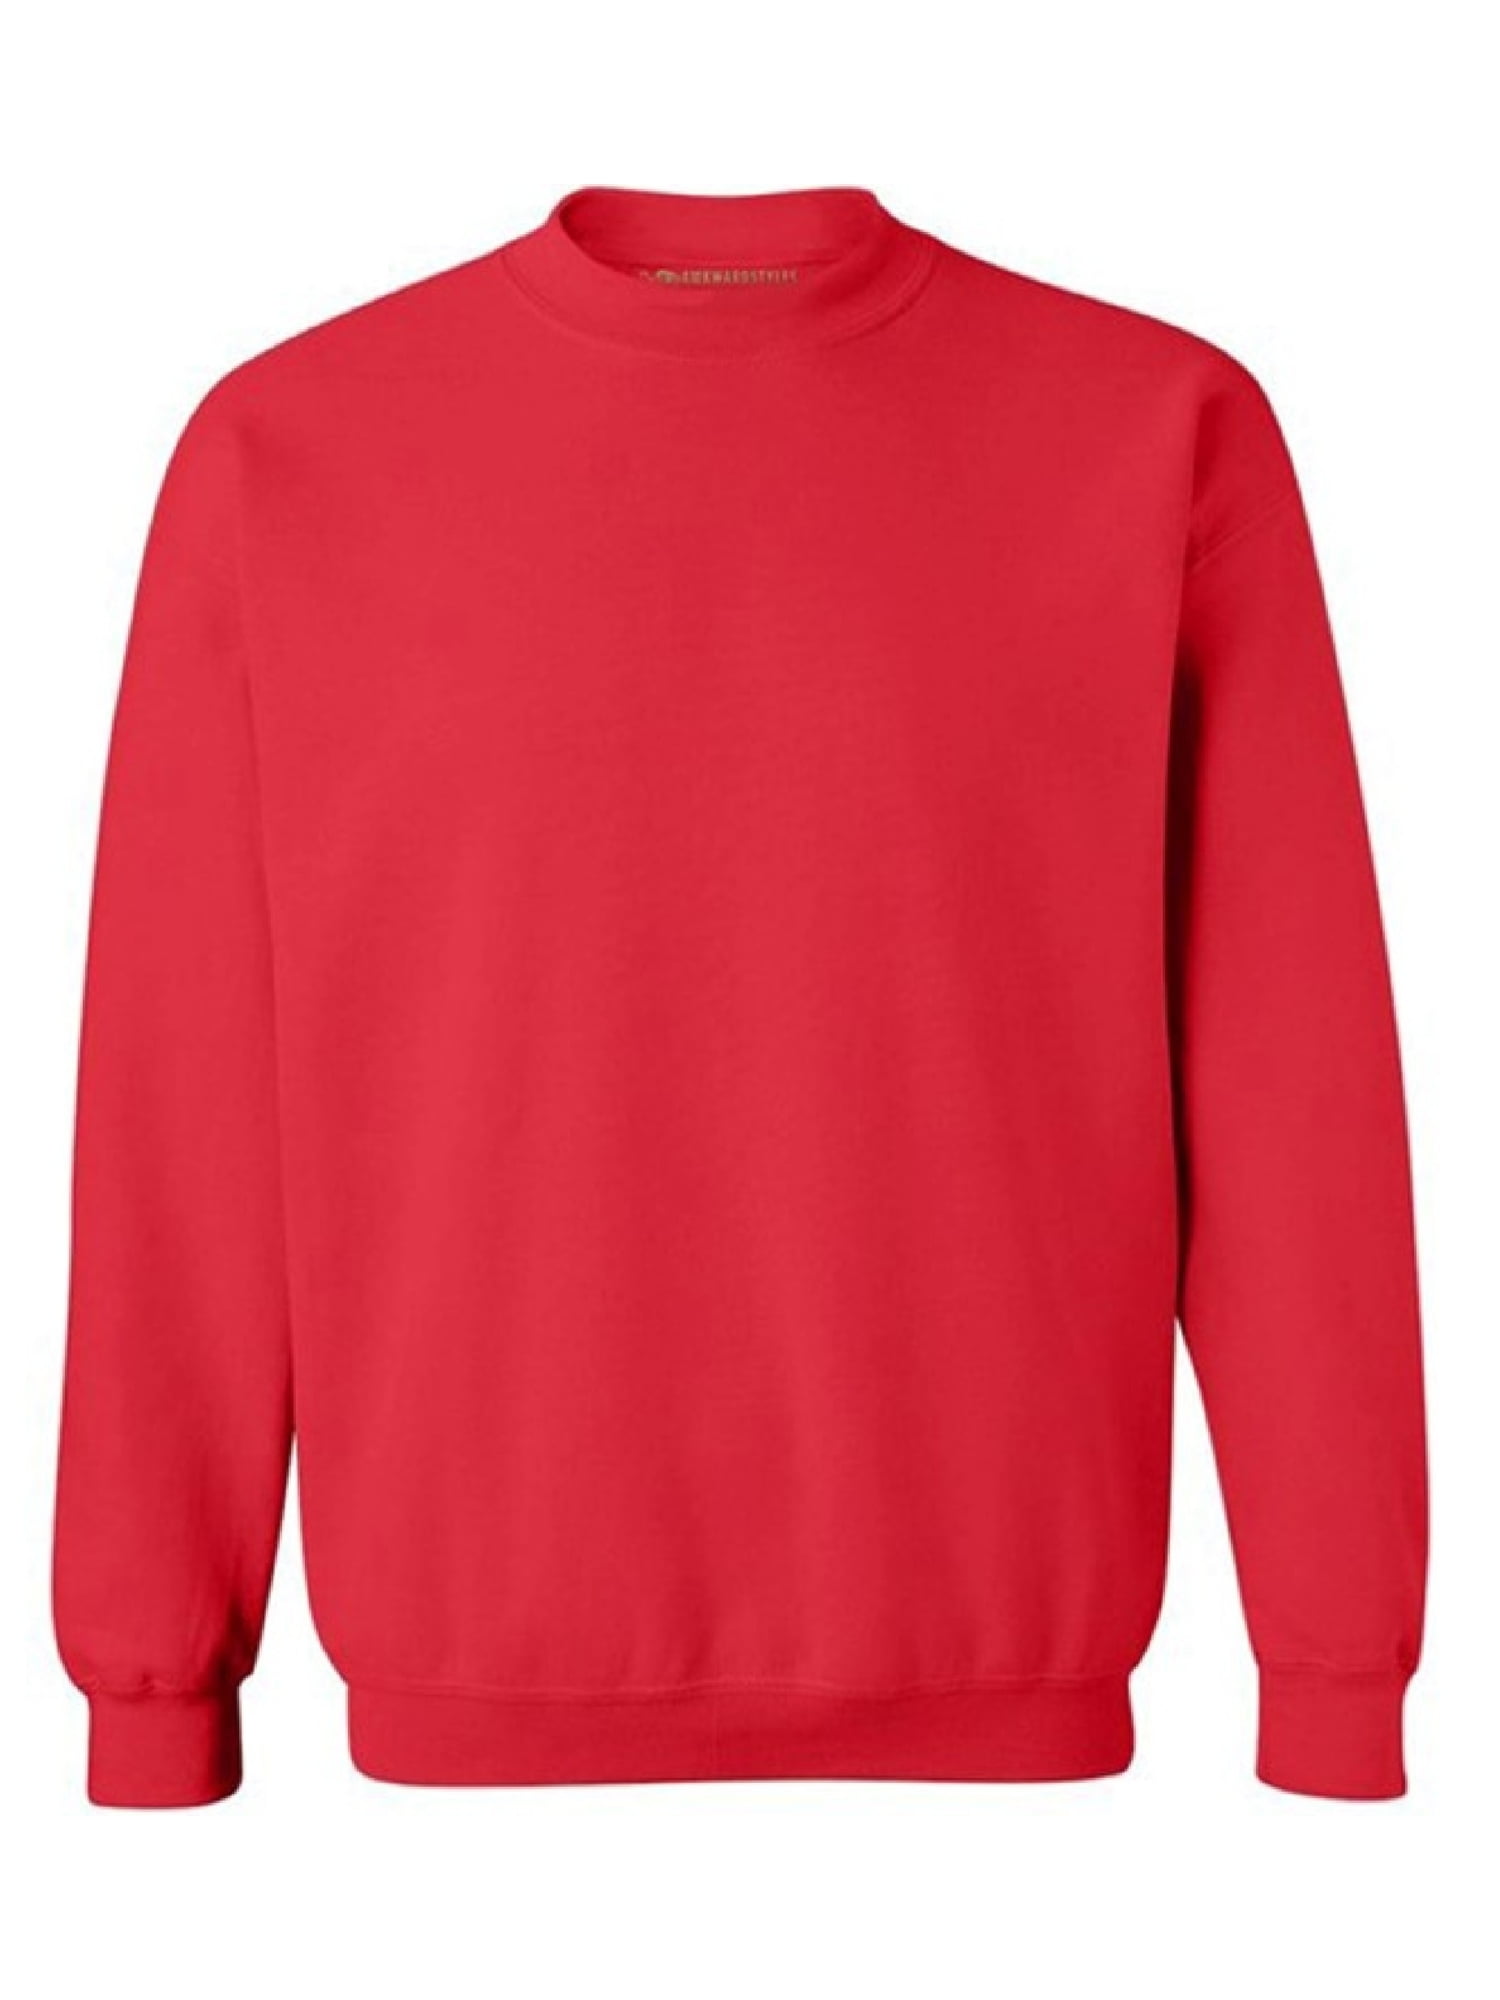 Gildan Crewneck Sweatshirt Unisex Sweatshirts Basic Casual Sweatshirts for  Women Men's Fleece Crewneck Sweatshirt Long Sleeve Plain Sweatshirt 